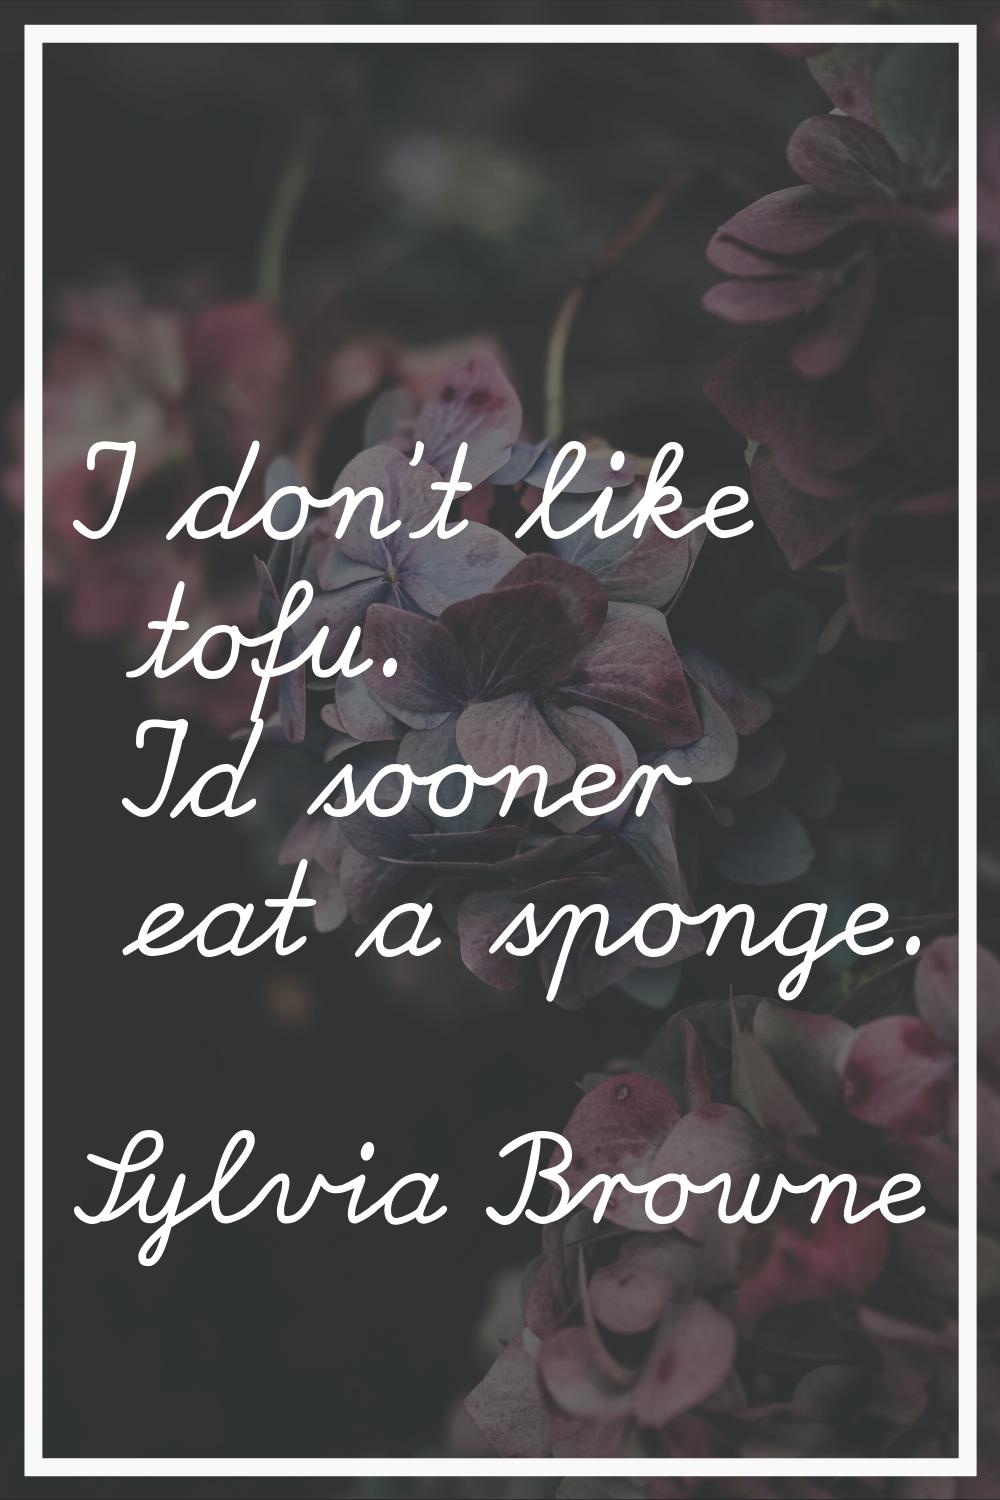 I don't like tofu. I'd sooner eat a sponge.